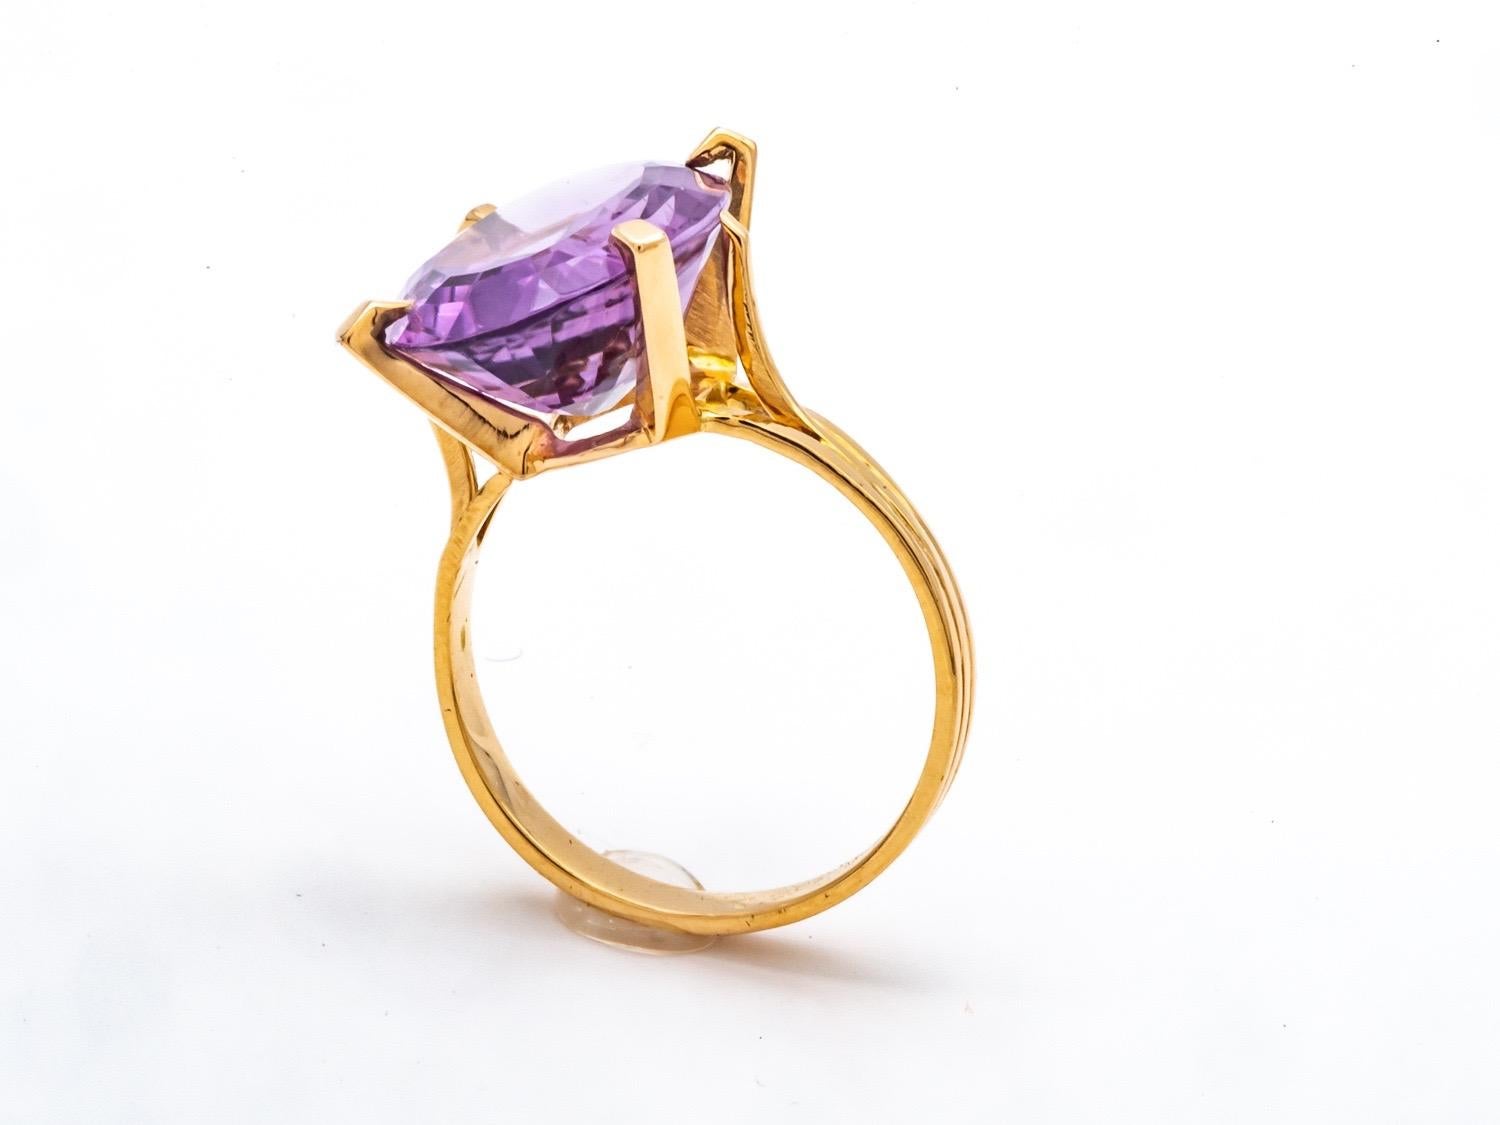 Entdecken Sie diesen herrlichen Ring aus 18 Karat Gelbgold, der mit einem prächtigen violetten Amethysten verziert ist. Dieses außergewöhnliche Stück ist die perfekte Ergänzung zu Ihrem Outfit für jeden Anlass.

Der ovale Amethyst verleiht diesem